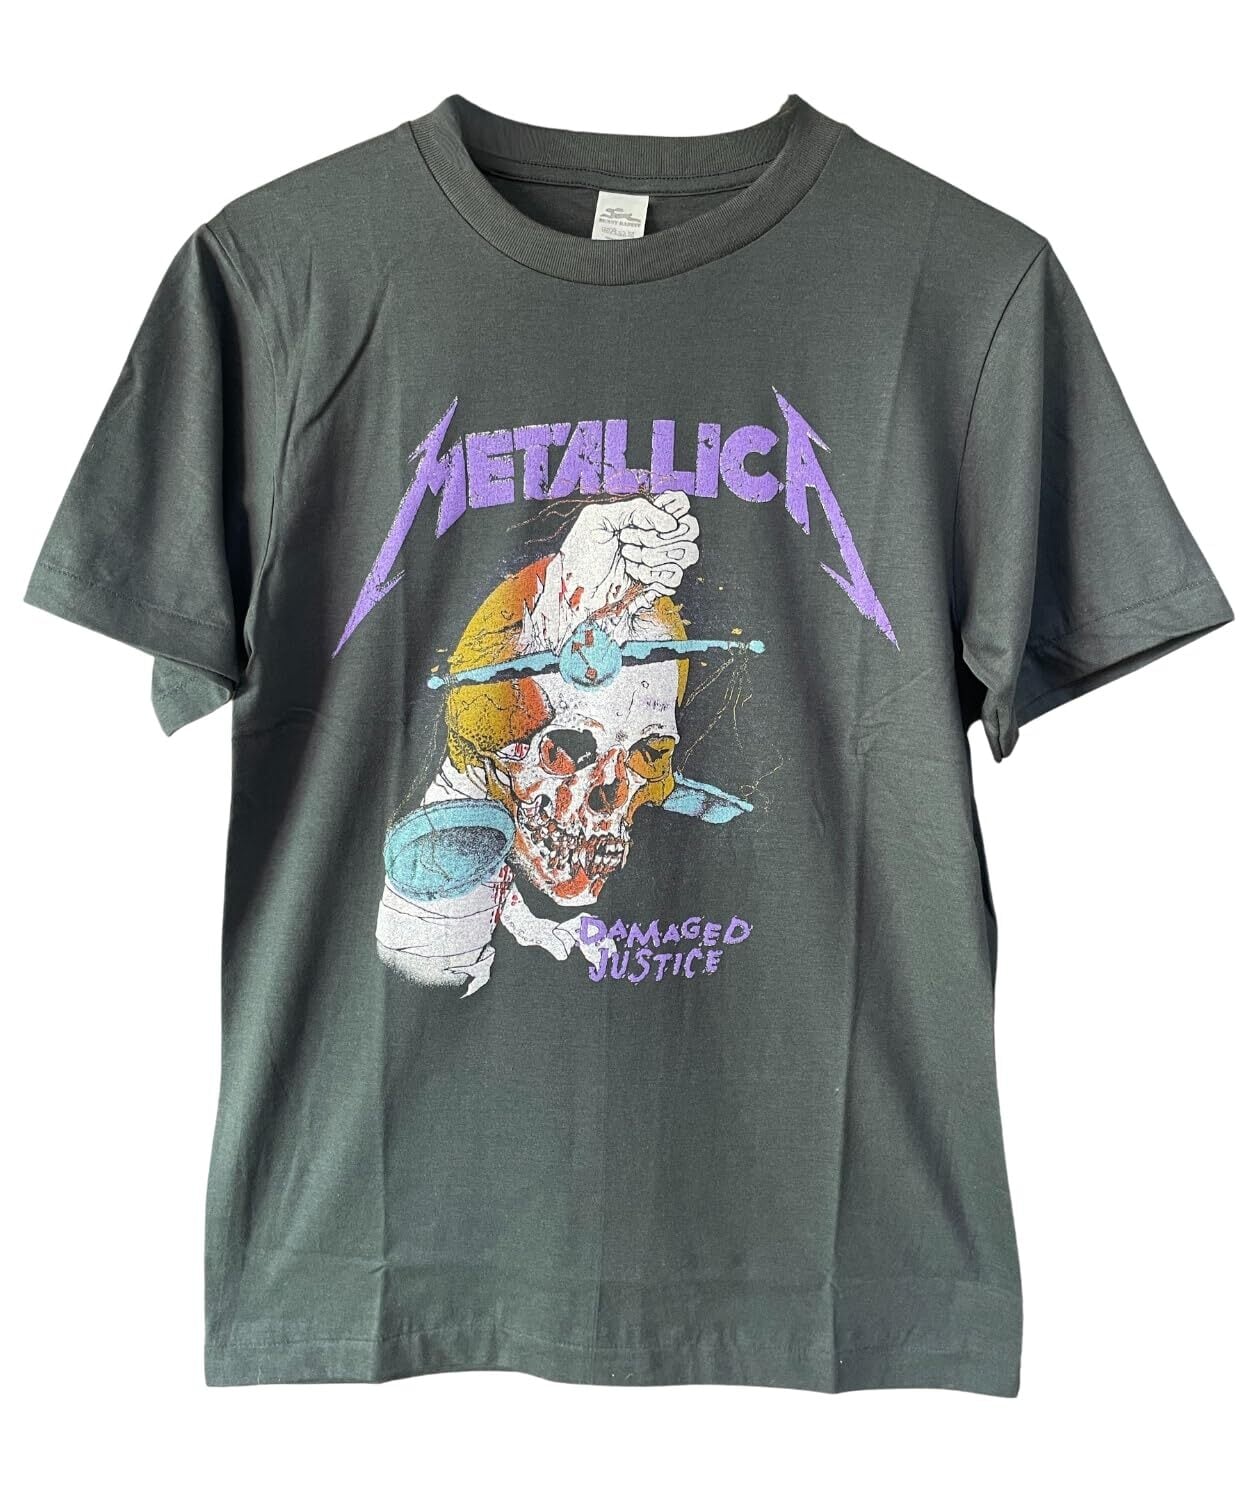 大人気定番商品 メタリカ Metallica 1988年オフィシャルTシャツ ...